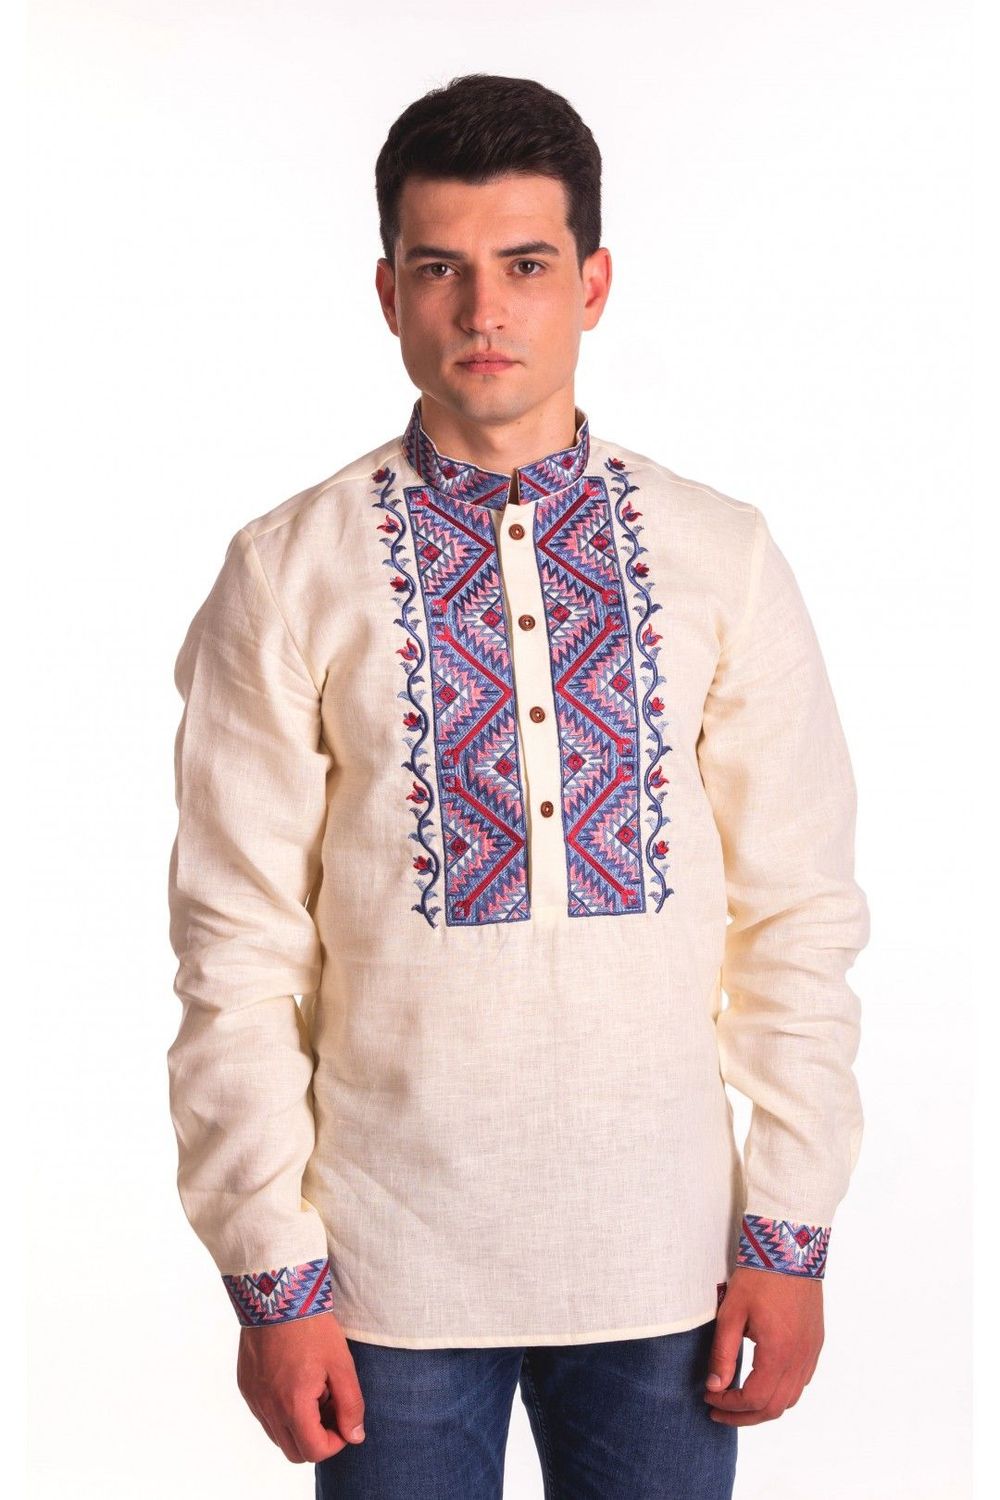 Milky Embroidered Linen Shirt with Cossacks Ornament - Nezalezhni ...